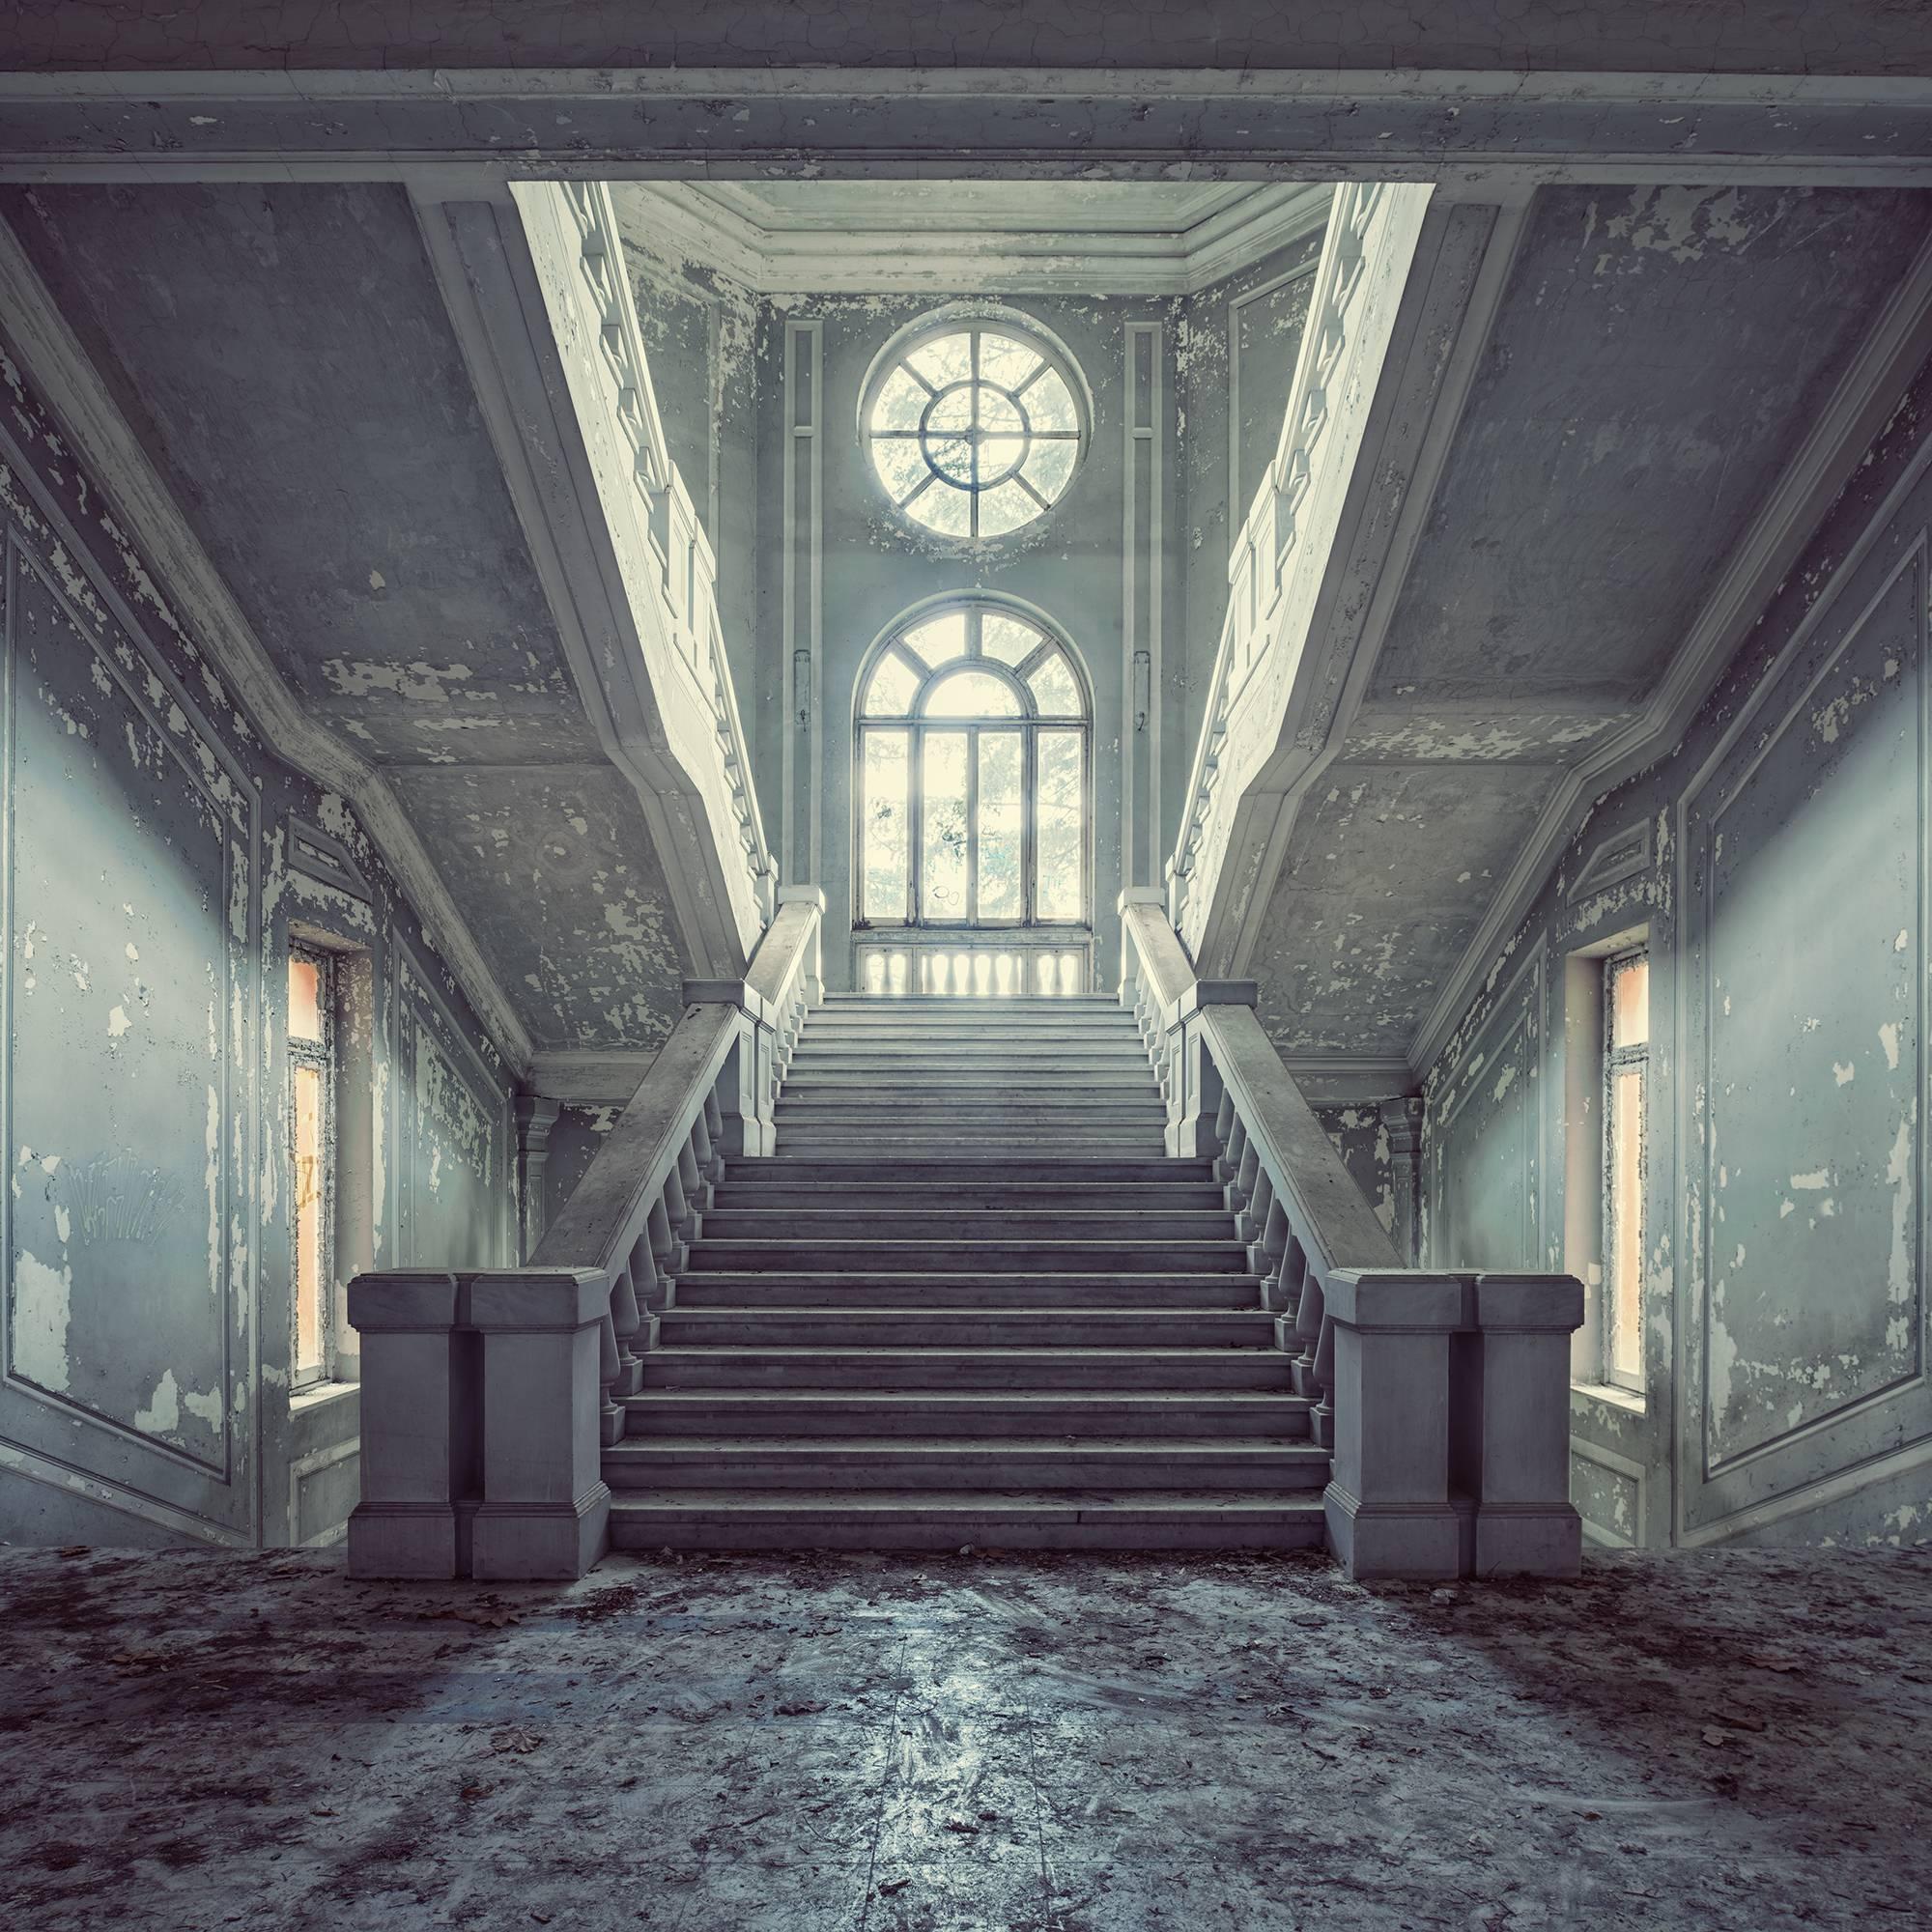 Quattro, Incremento series (Interior of abandoned asylum, Italy)